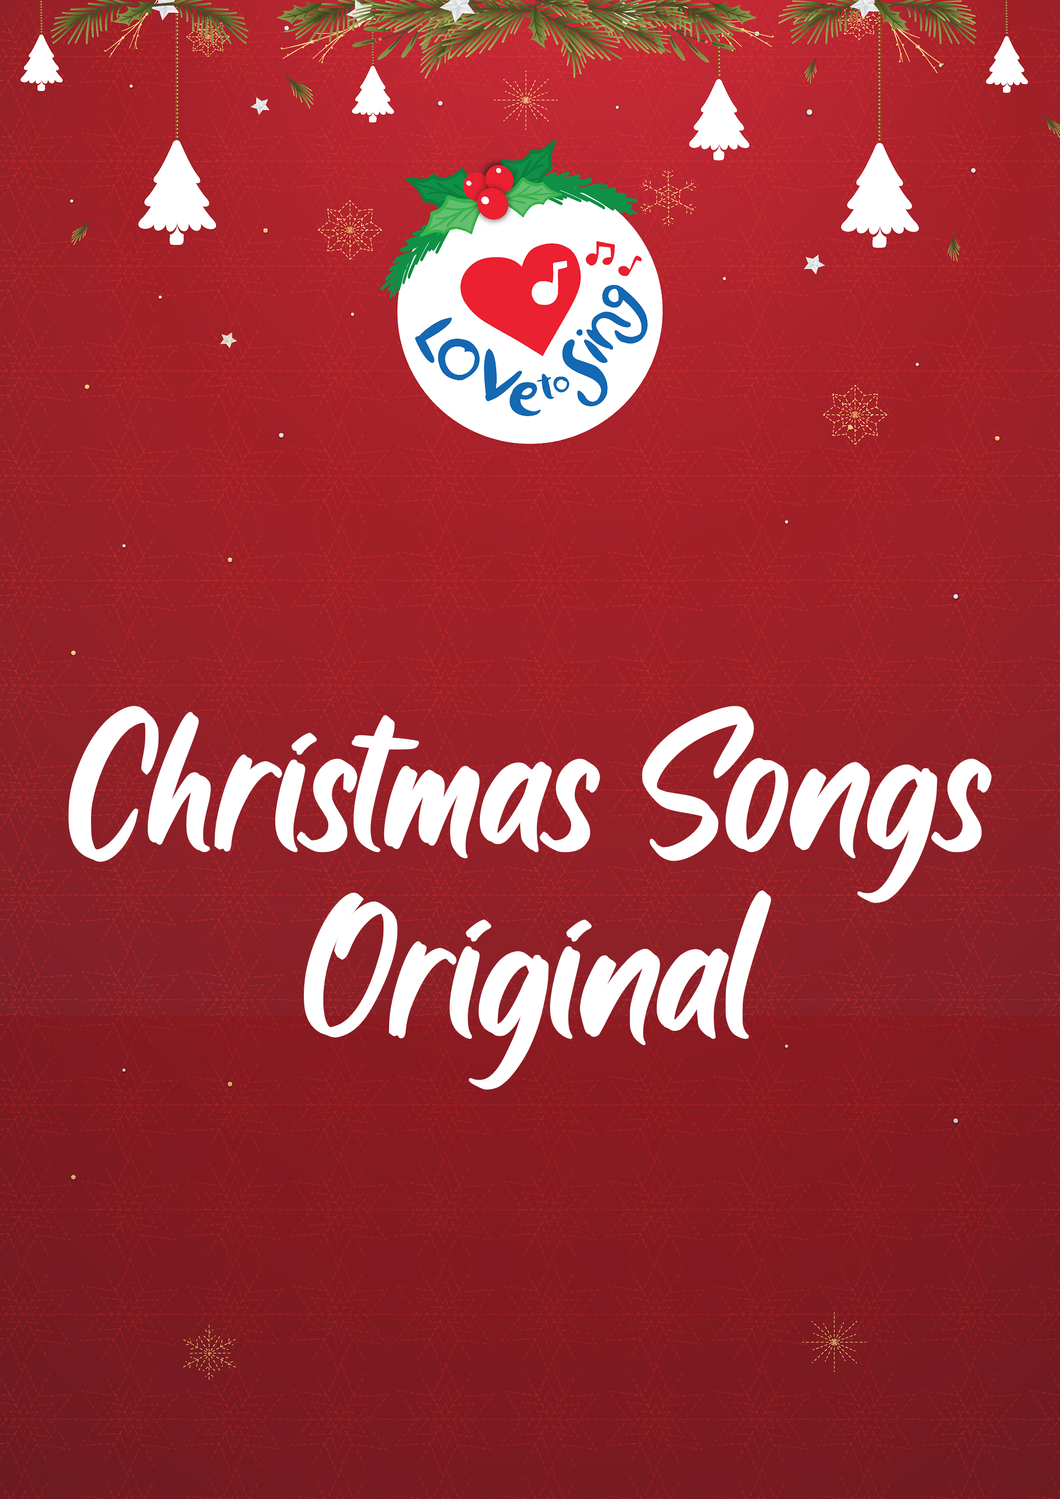 Buy Christmas Songs Original Lyrics Ebook by Love to Sing